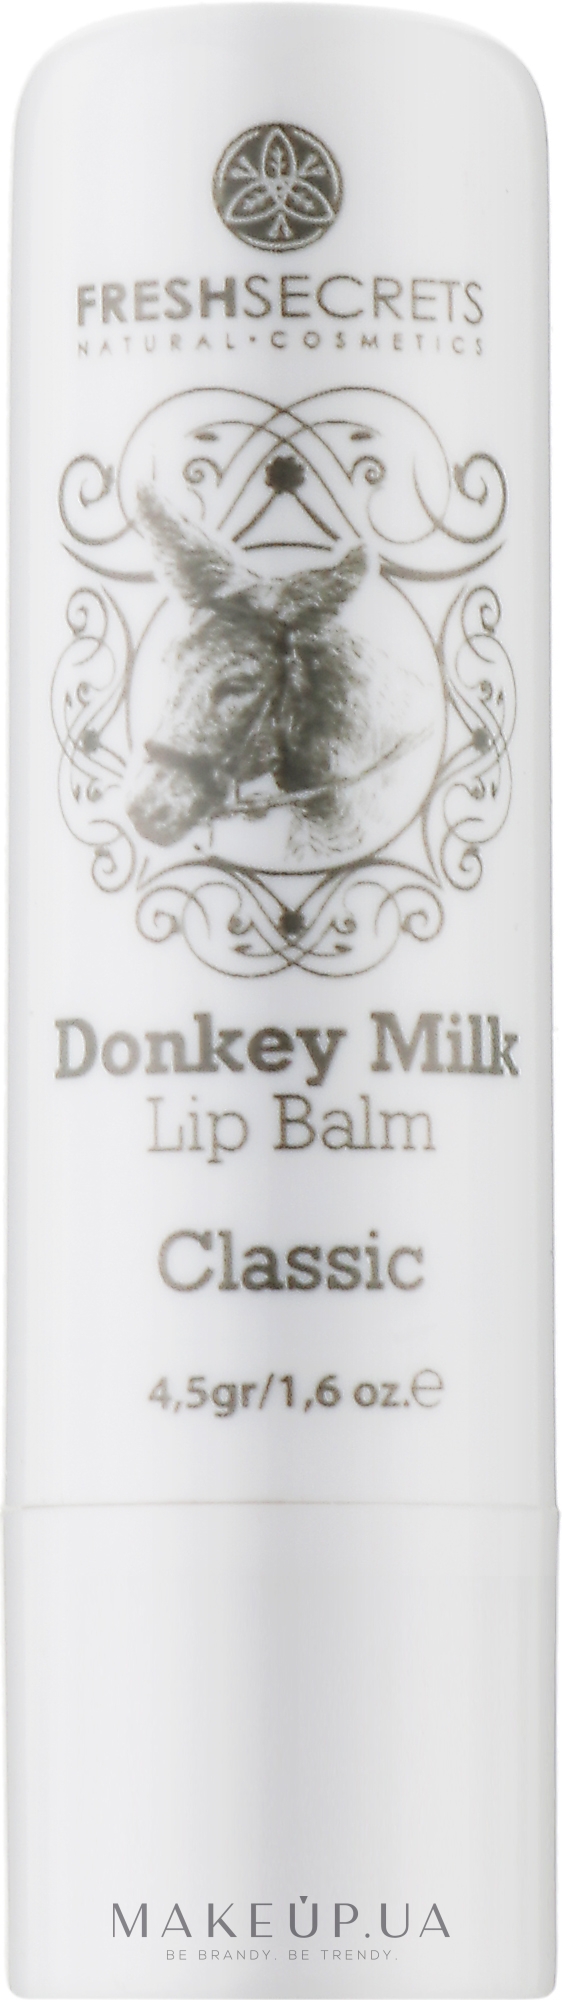 Гигиеническая губная помада - Madis Fresh Secrets Donkey Milk Classic Lip Balm — фото 4.5g